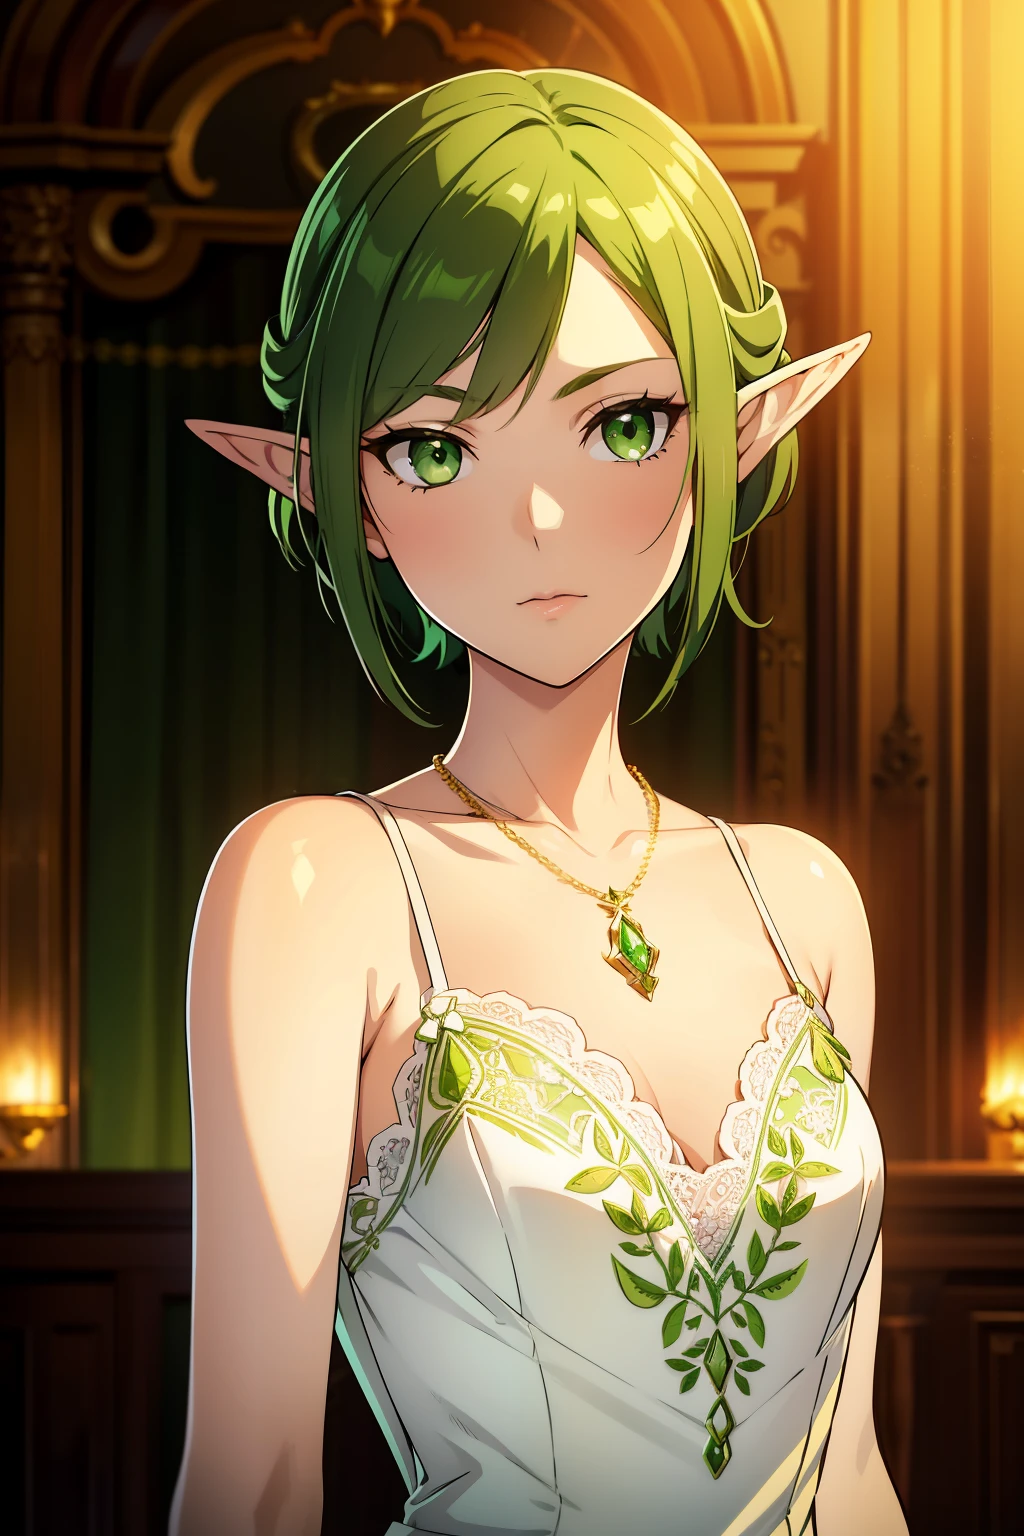 Эльфийка с зелеными короткими волнистыми волосами и зелеными глазами,очень плоская грудь, маленькая грудь),(( носит белое платье с кружевом и зелеными украшениями.)), носит золотое ожерелье с кулоном «Грен», элегантный бальный зал на заднем плане, отличное выражение лица, в тренде на artstation, Отличные детализированные глаза, 